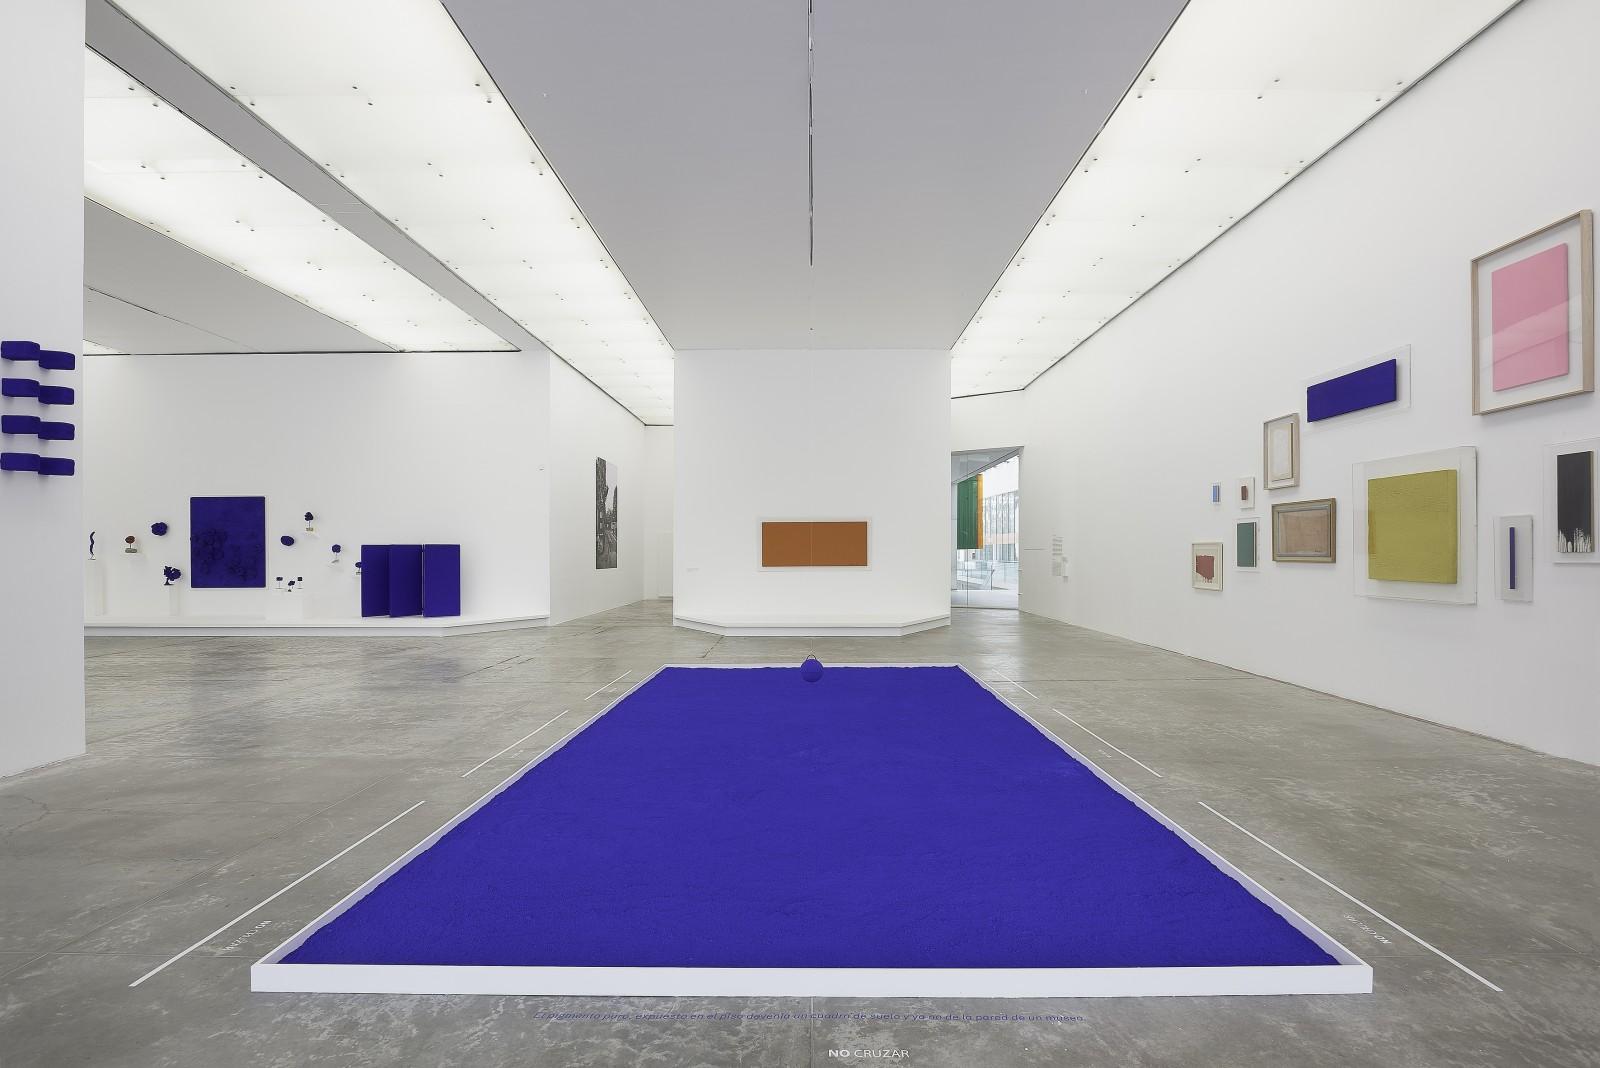 Vue de l'exposition, "Yves Klein", MUAC - Museo Universitario de Arte Contemporáneo, 2017